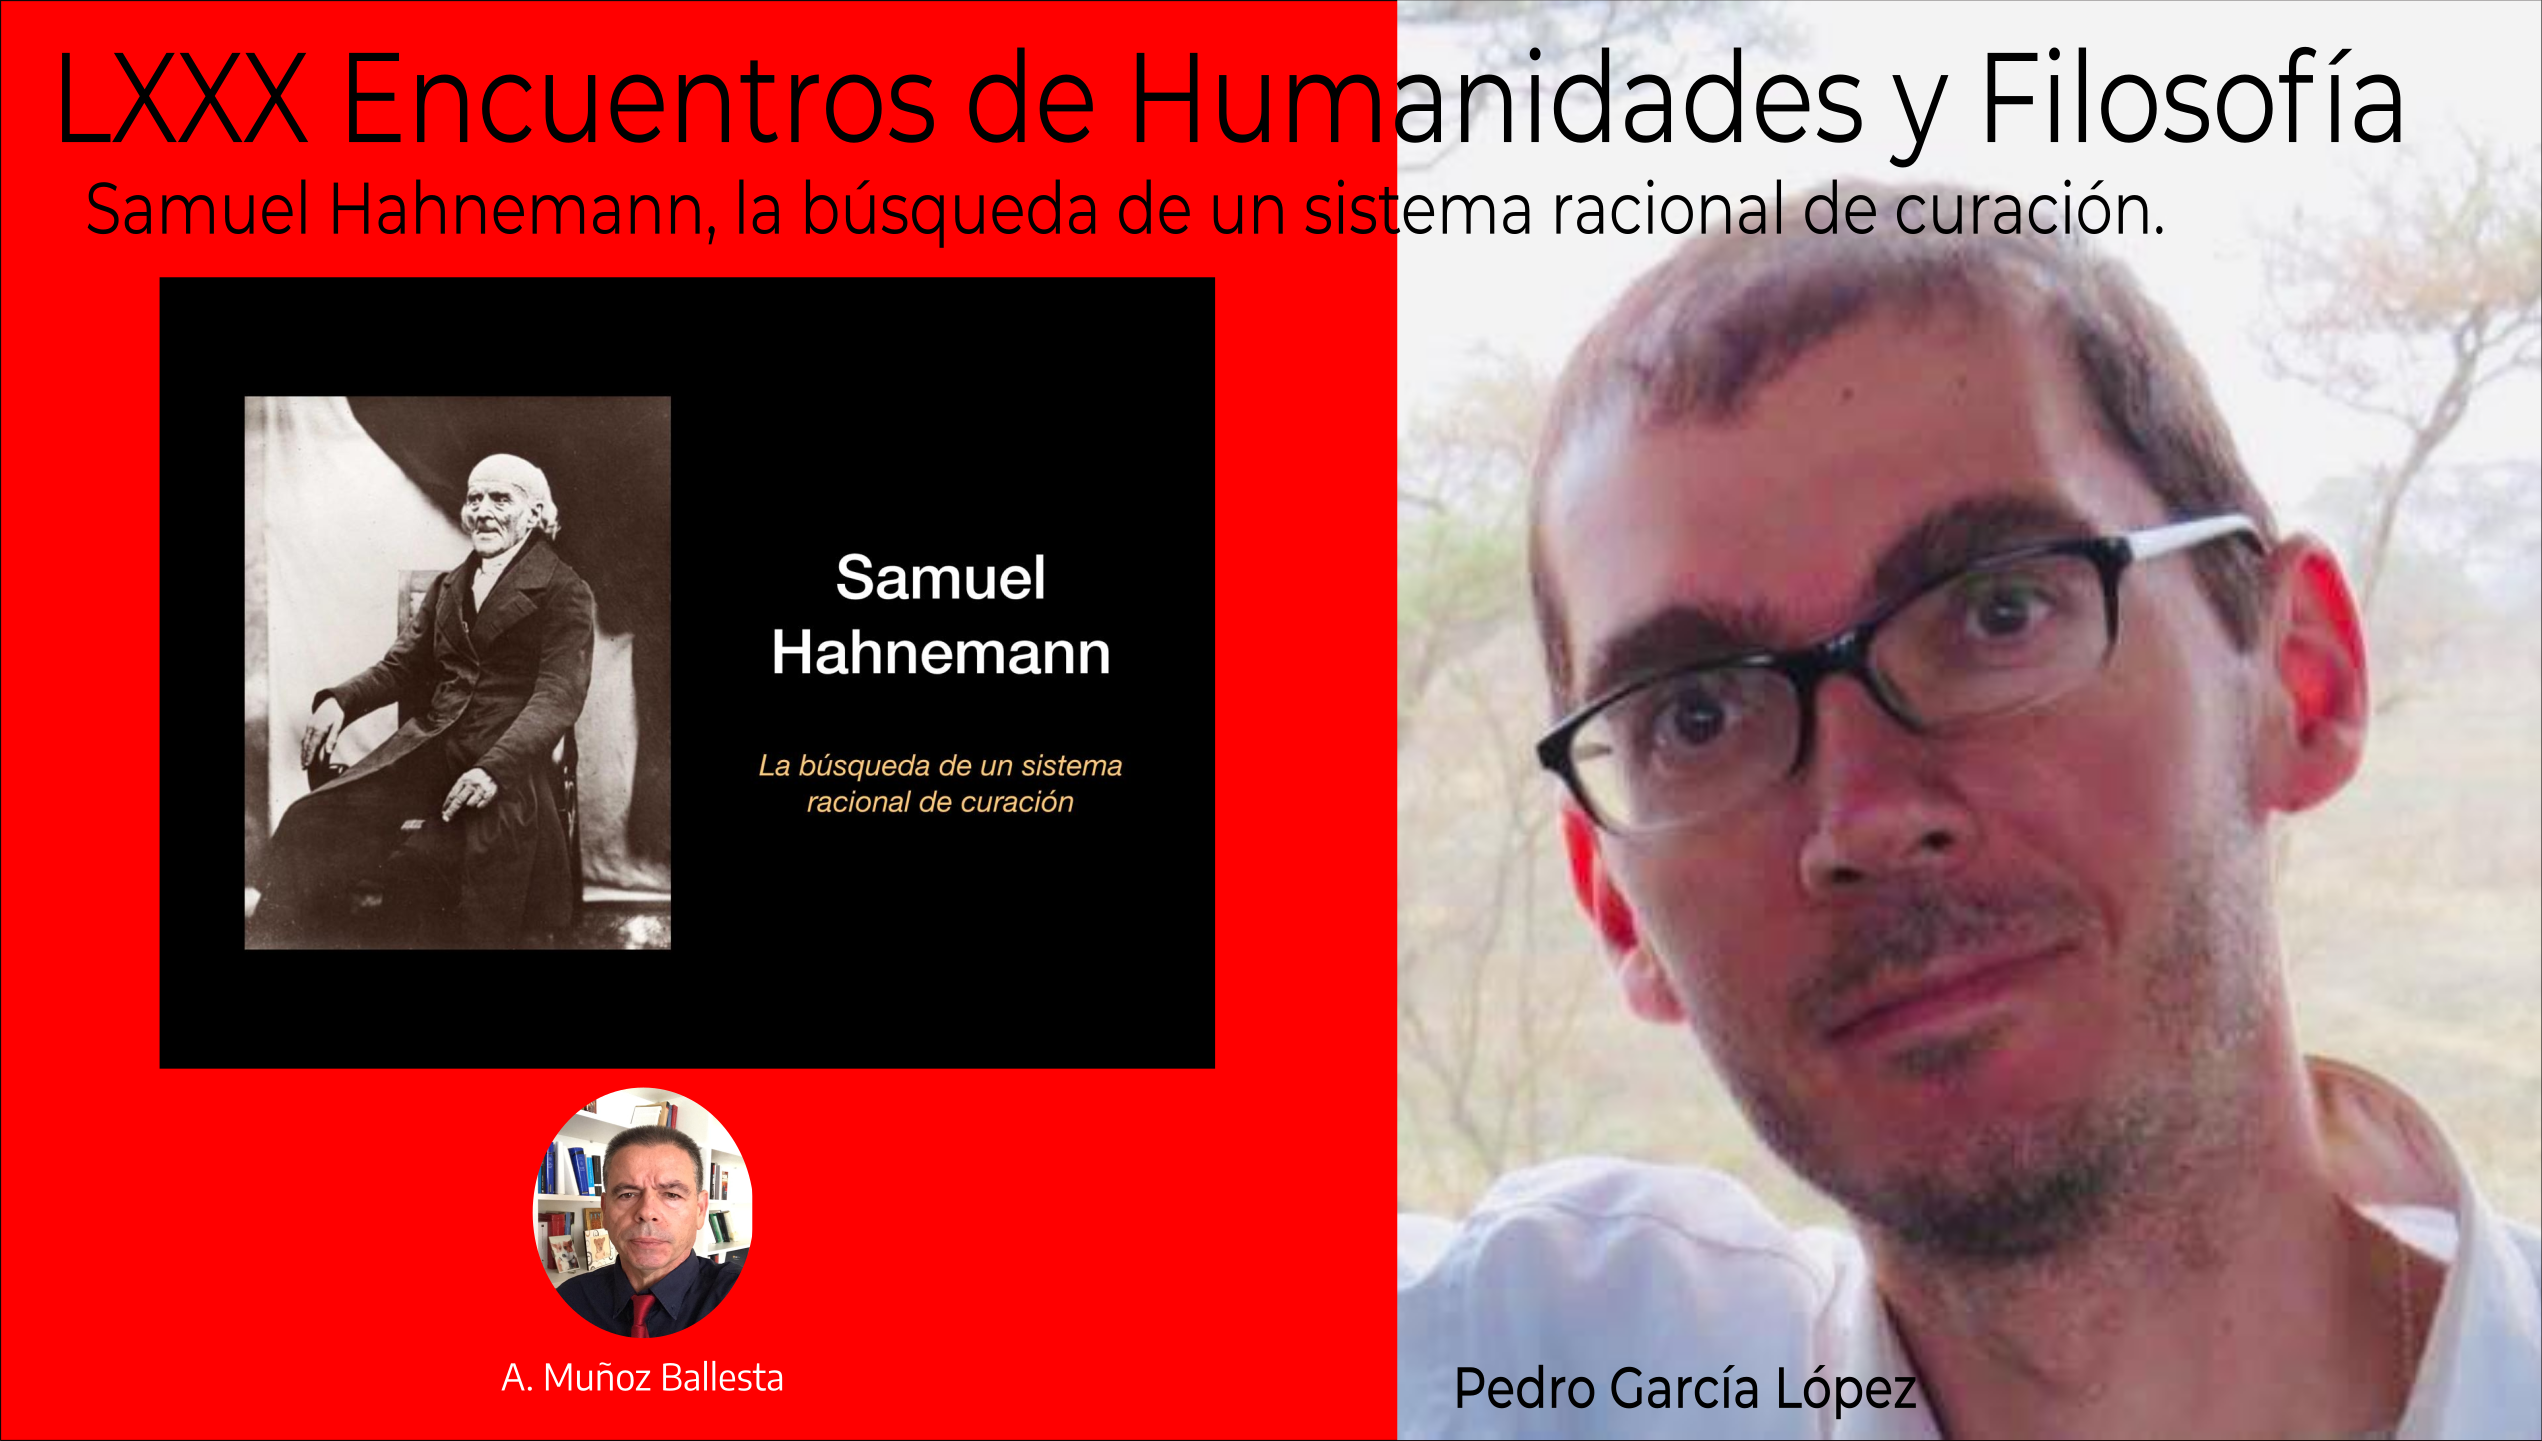 LXXX Encuentros Humanidades y Filosofía, Samuel Hahnemann, la búsqueda de un sistema racional de curación